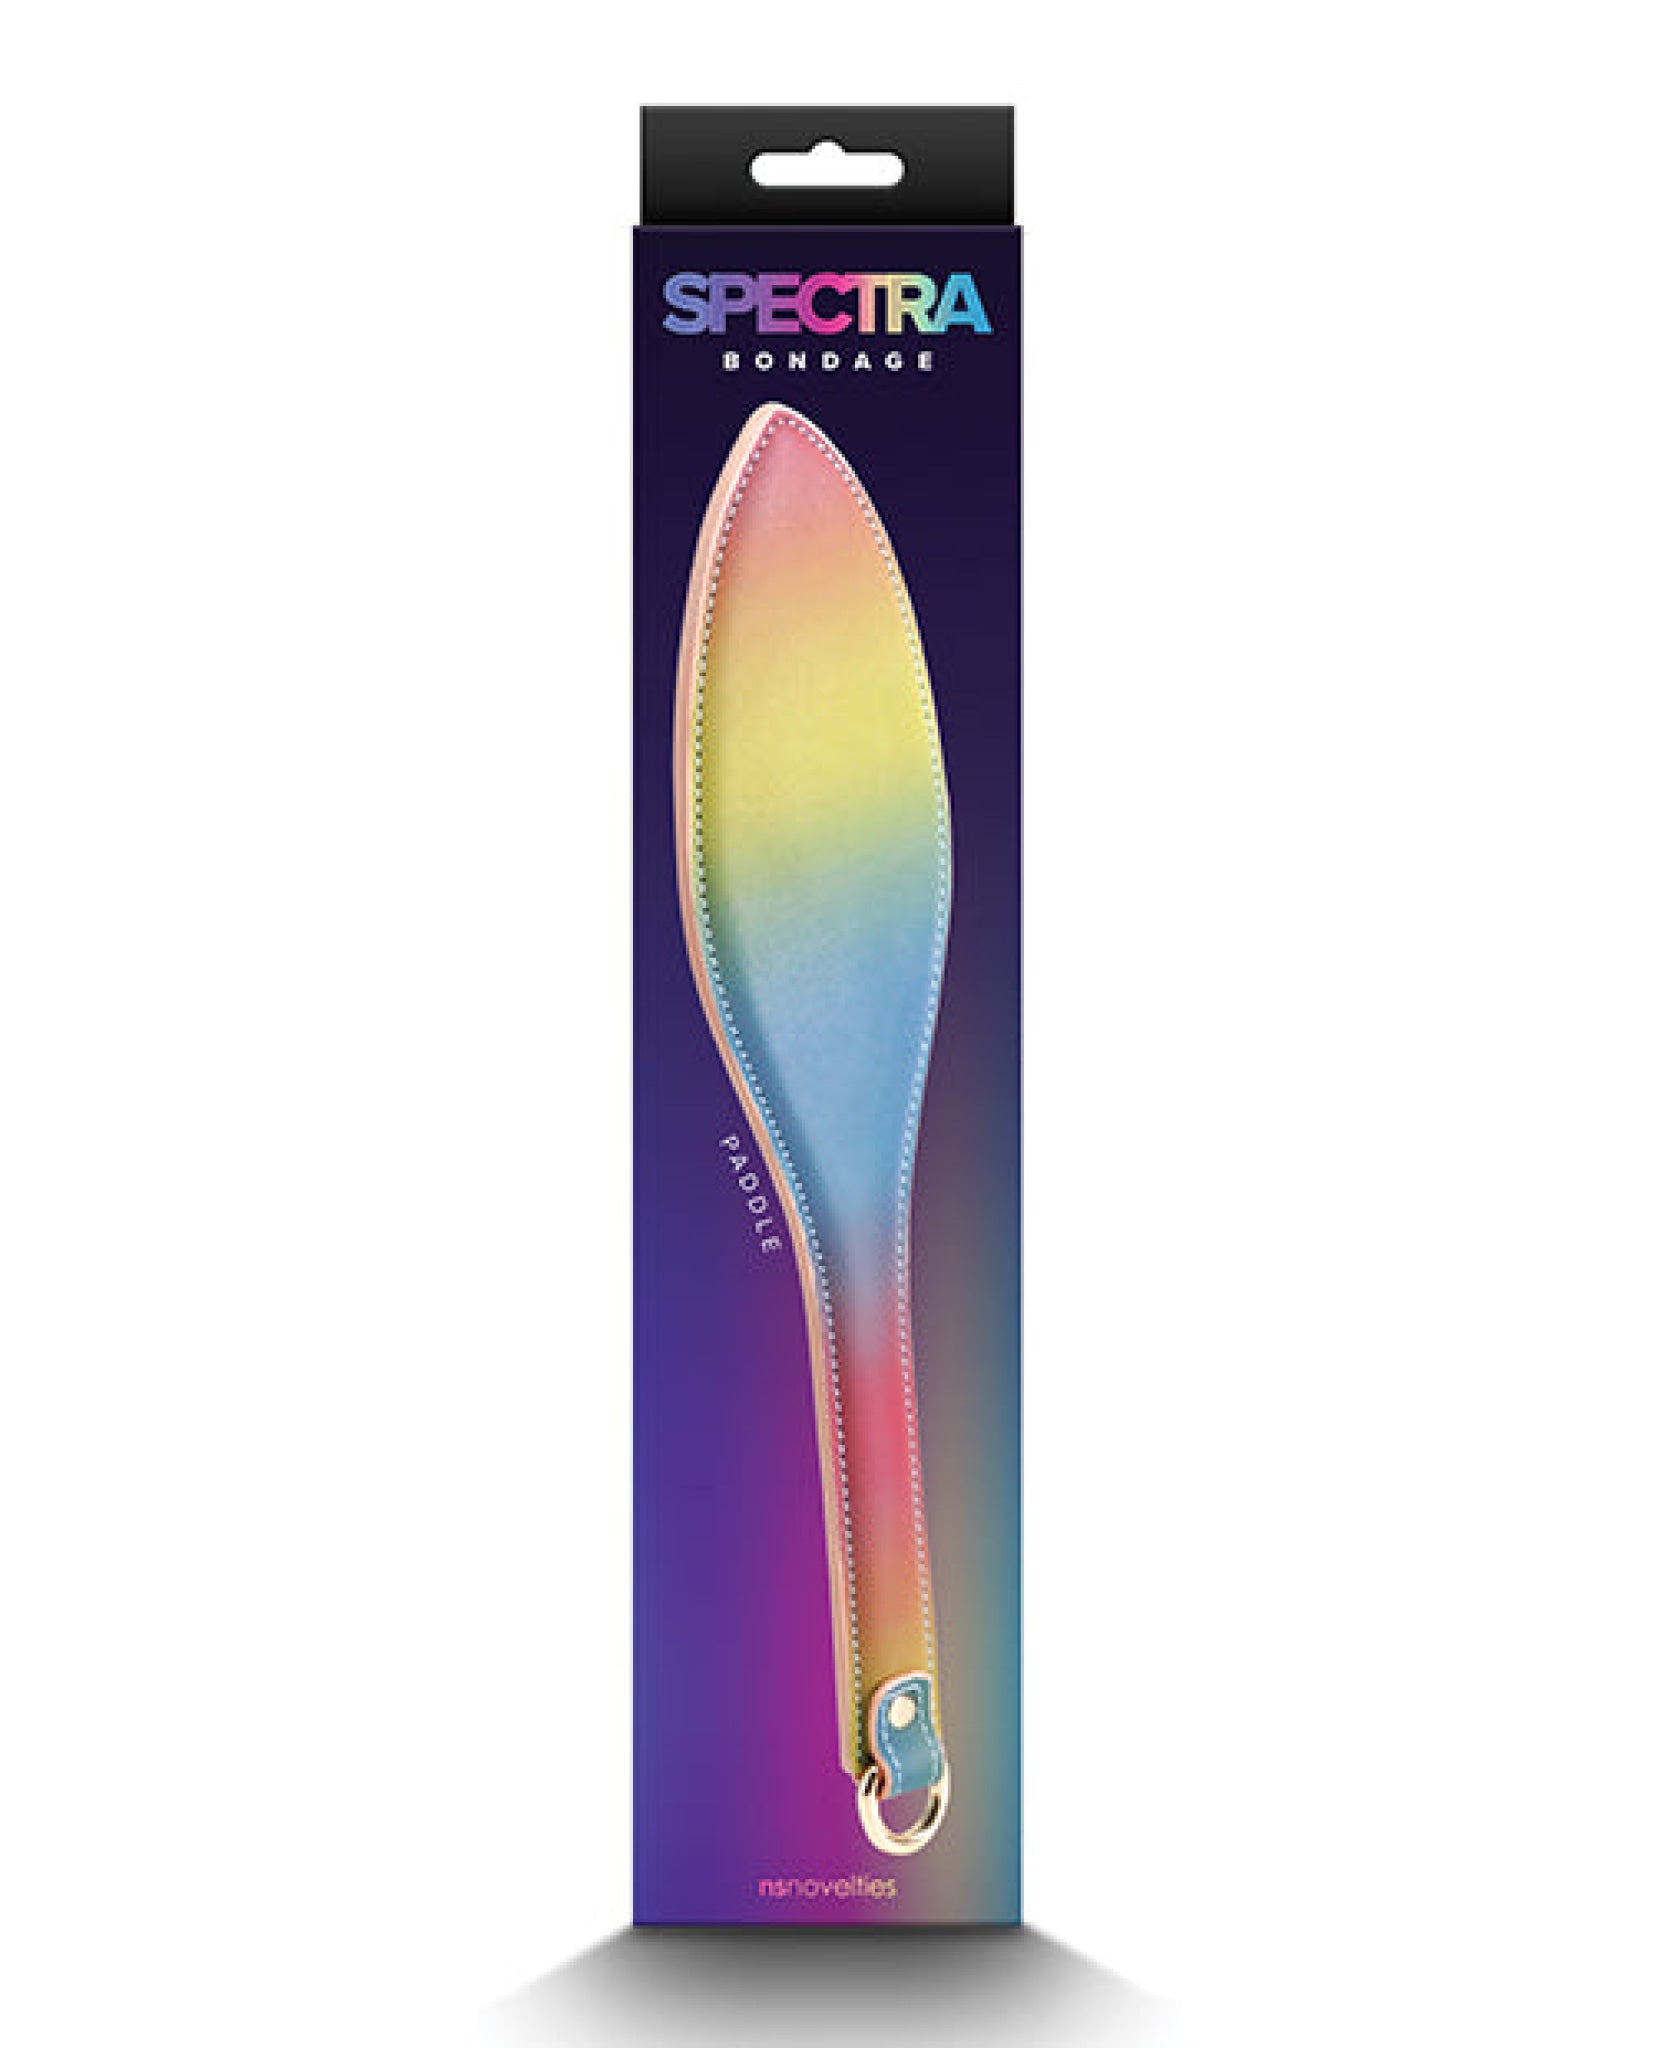 Spectra Bondage Paddle - Rainbow Spectra